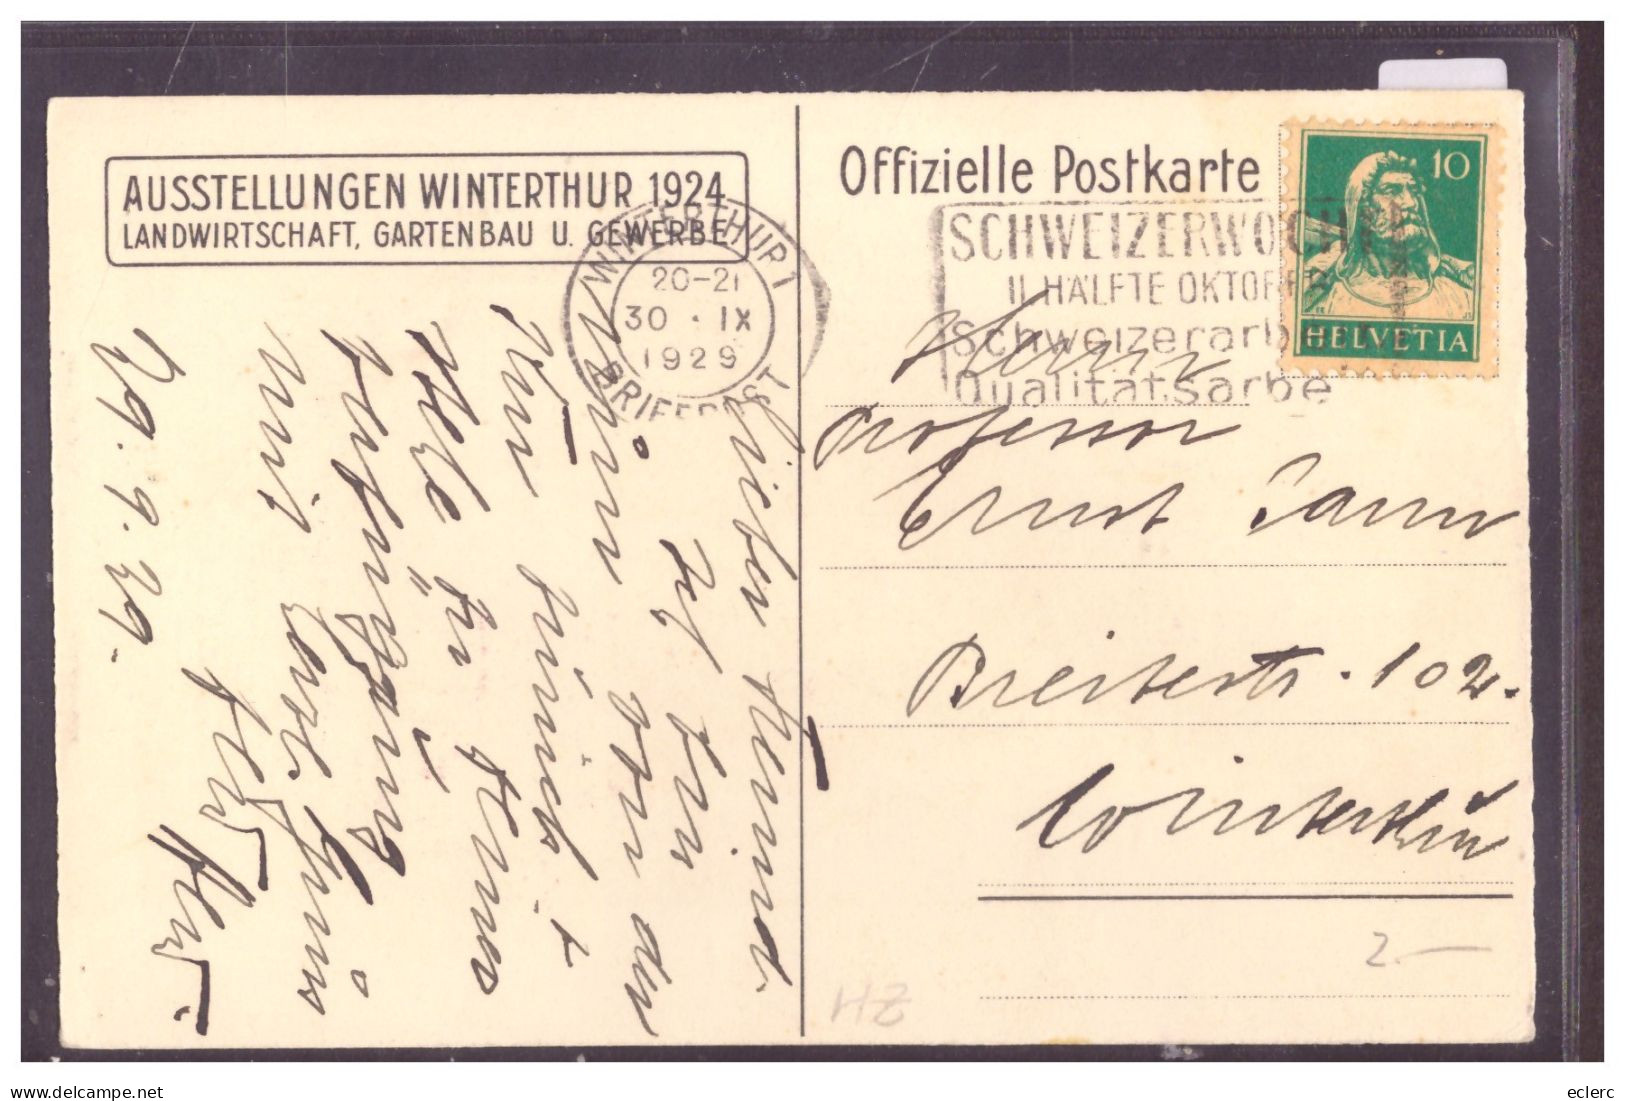 WINTERTHUR - AUSSTELLUNG FÜR LANDWIRTSCHAFT UND GARTENBAU 1924 - TB - Winterthur